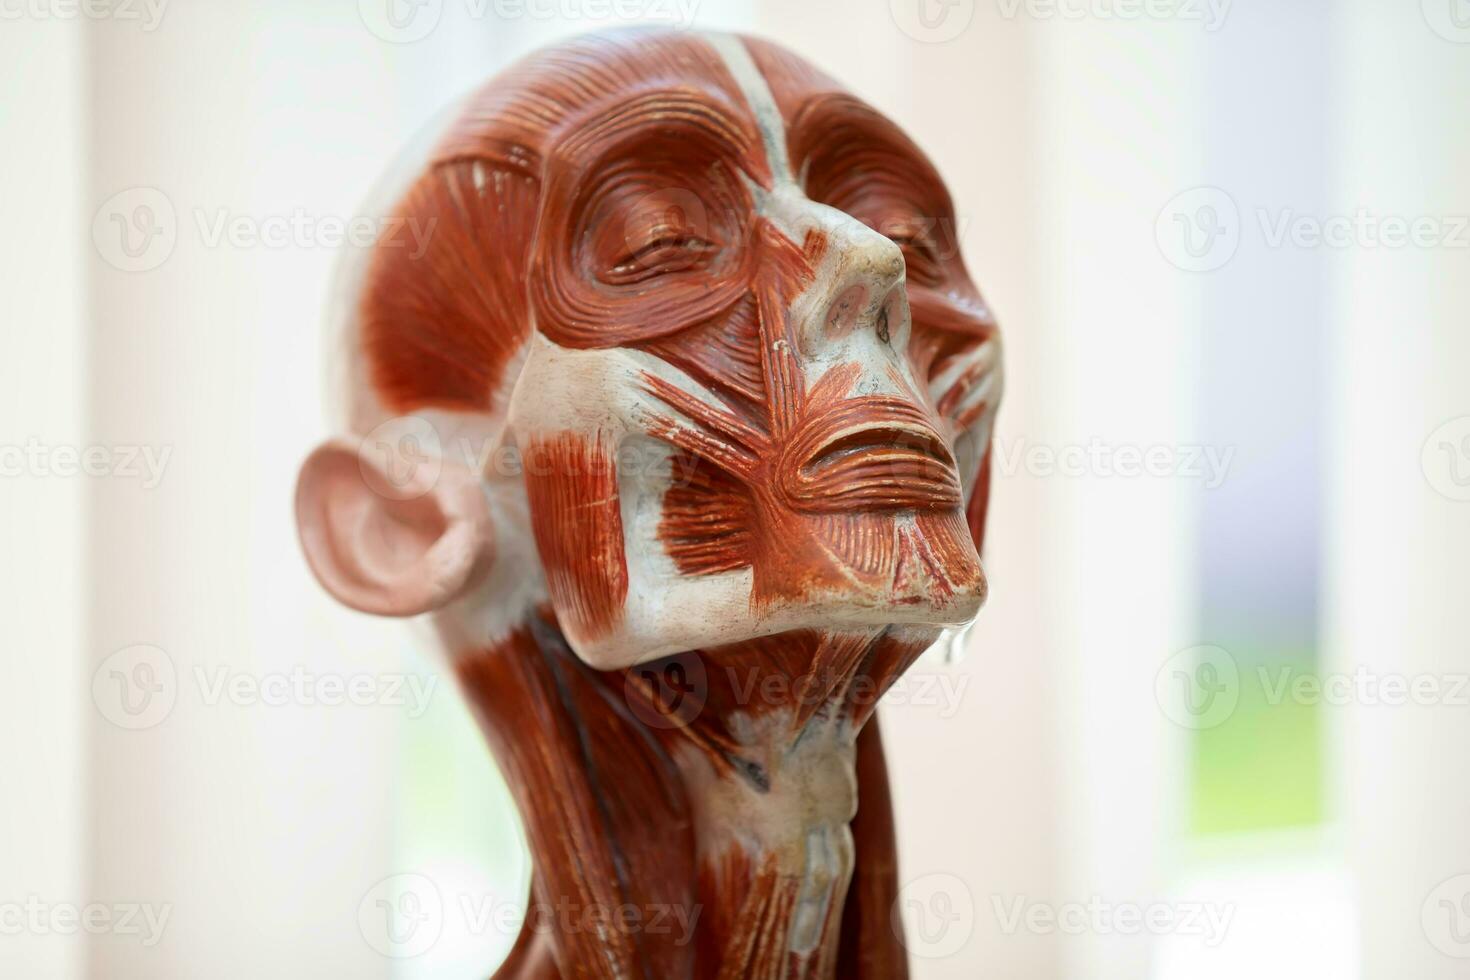 humano cabeza anatomía modelo para educacion.humana cara anatomía foto